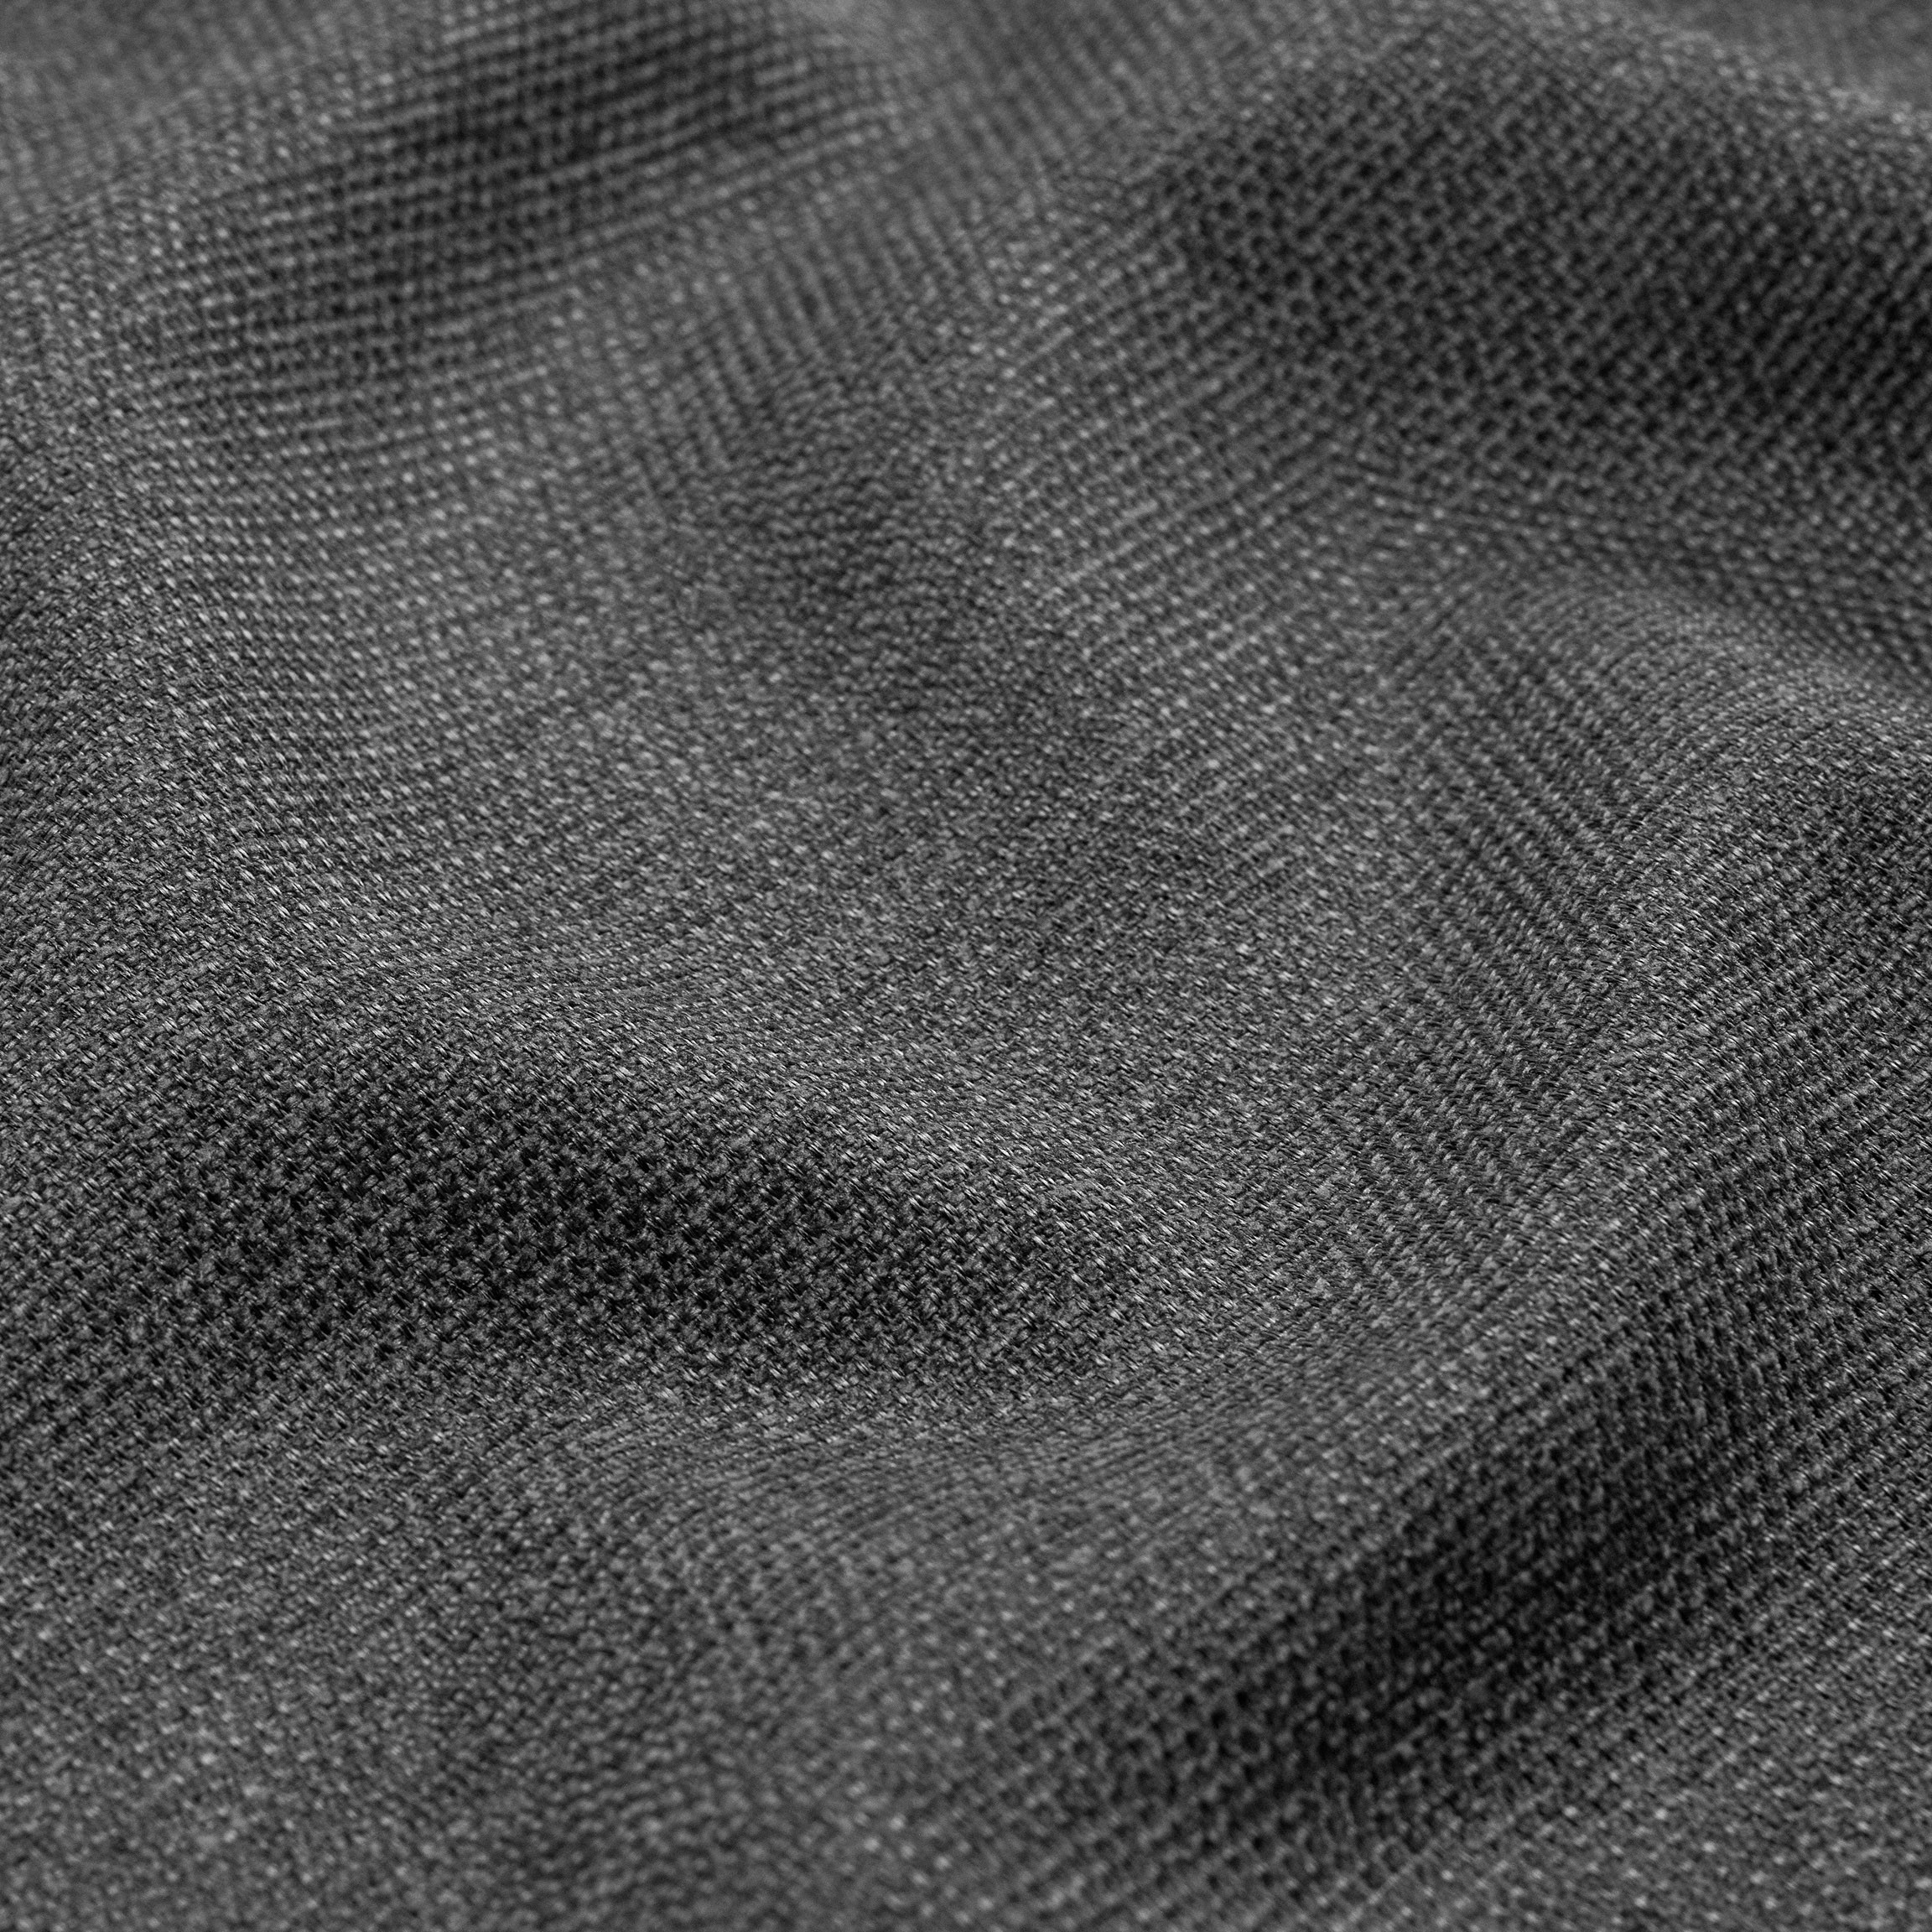  Портьерная ткань SARA GRAPHITE, ширина 300 см  - Фото